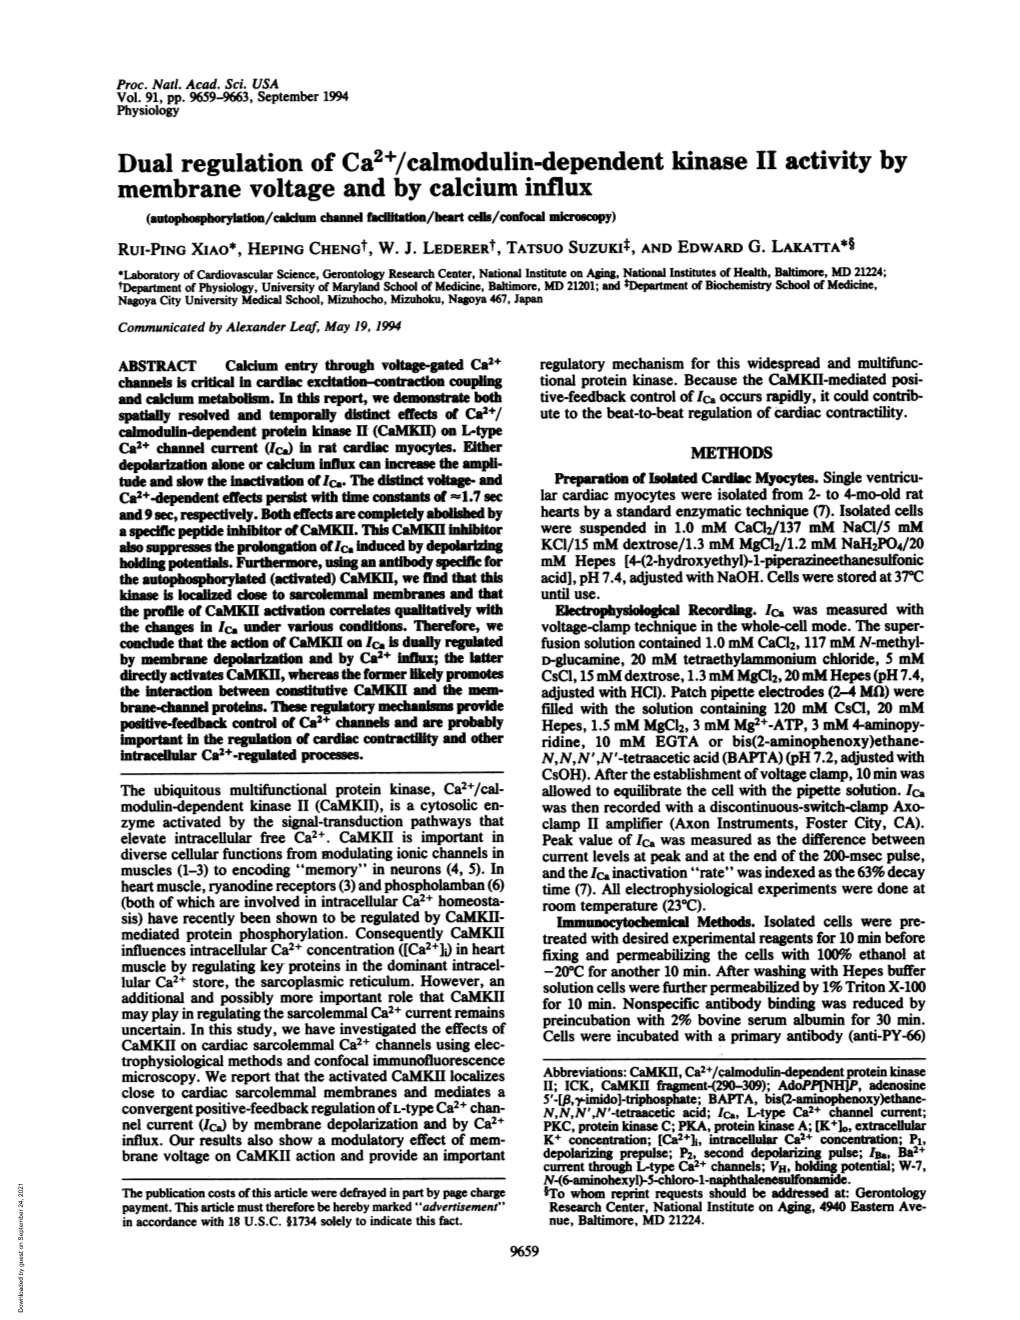 Dual Regulation of Ca2+/Calmodulin-Dependent Kinase